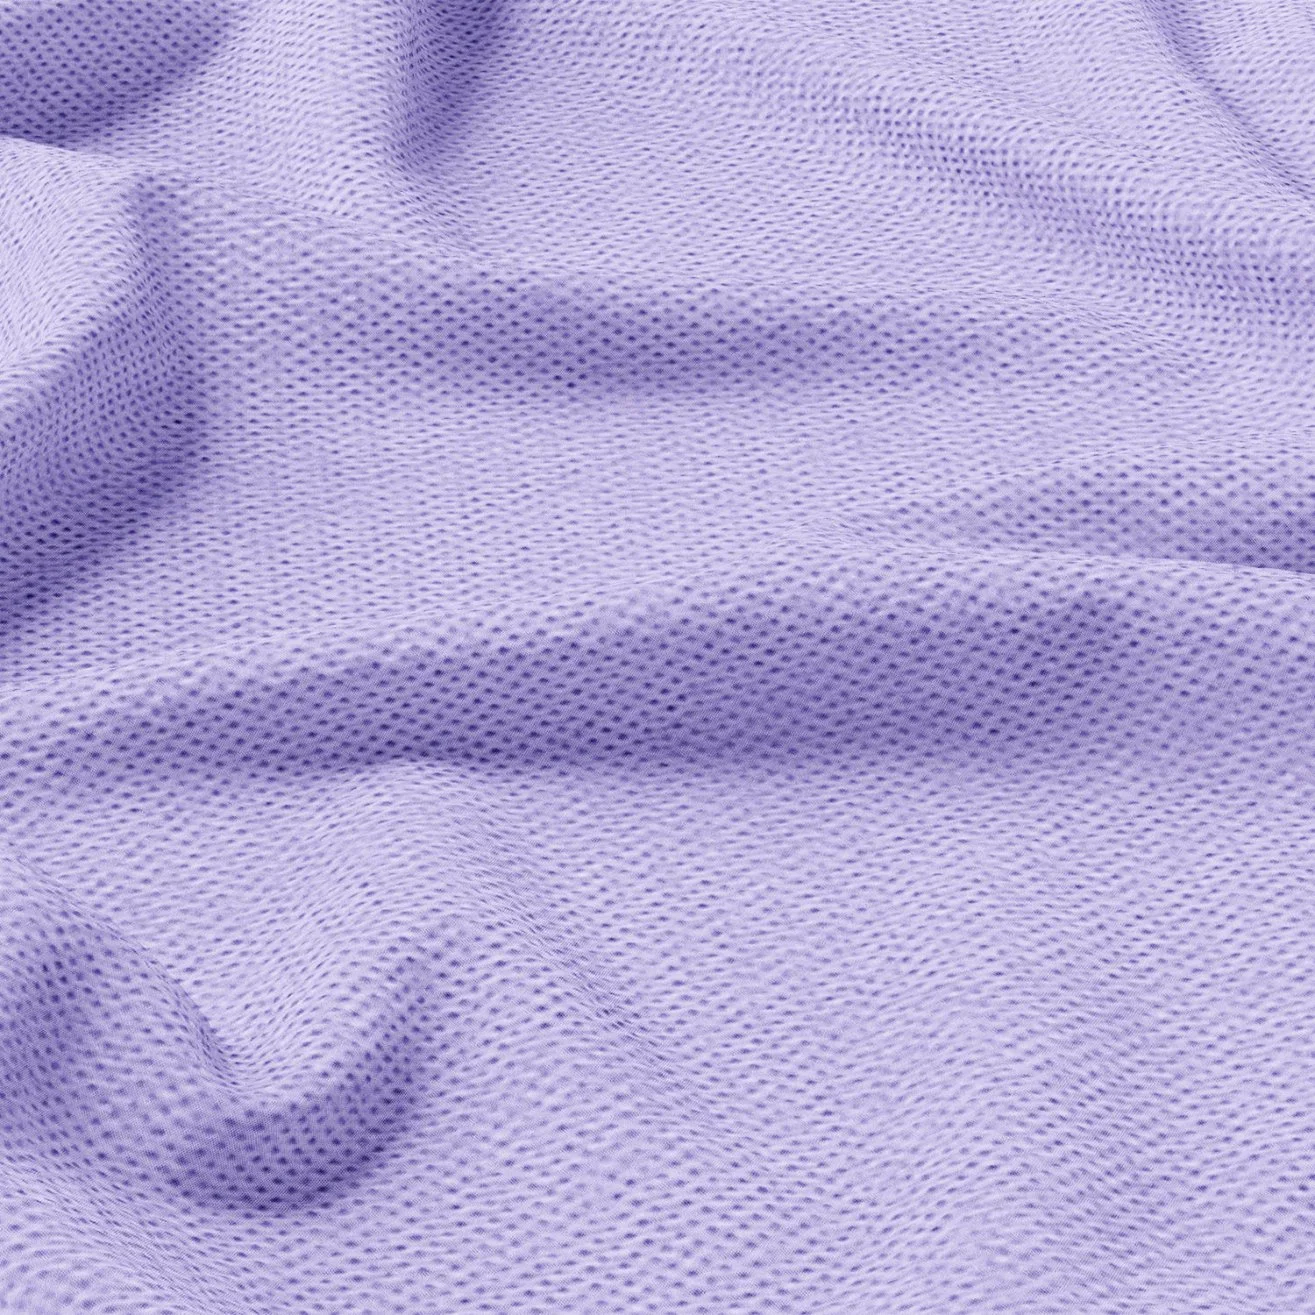 "Material	têxtil doméstico em polipropileno, roxo claro e ecológico"